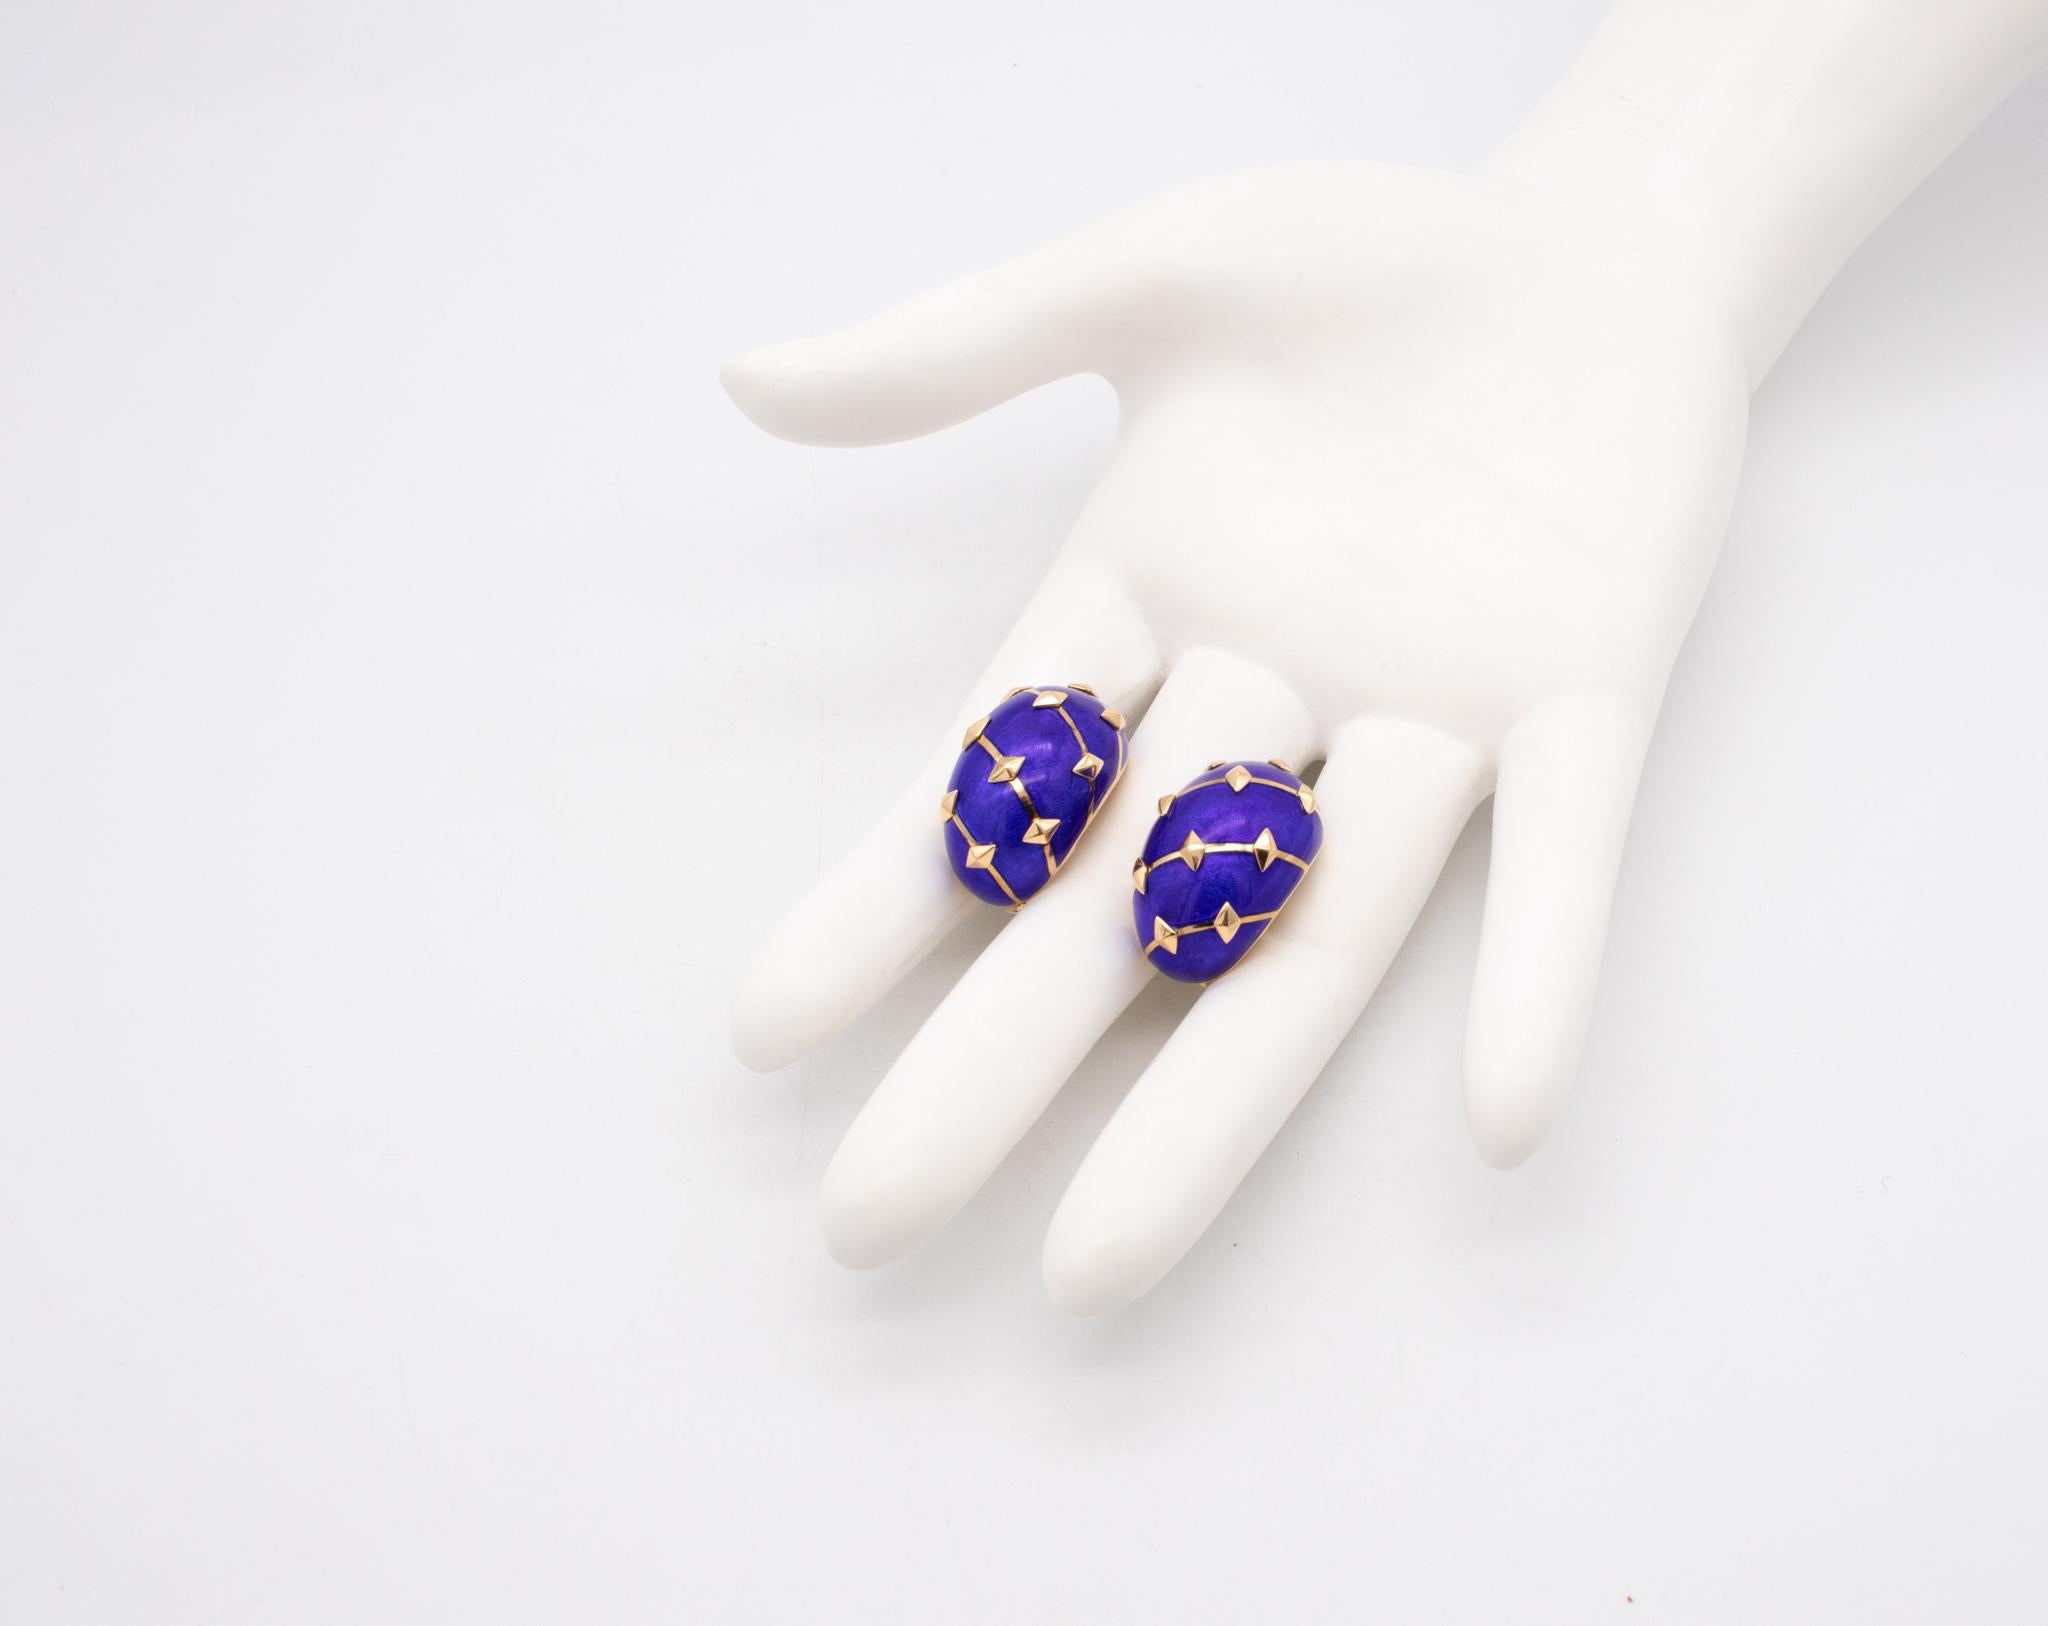 Modernist Tiffany & Co France Jean Schlumberger Lozenge Earrings in 18Kt With Blue Enamel